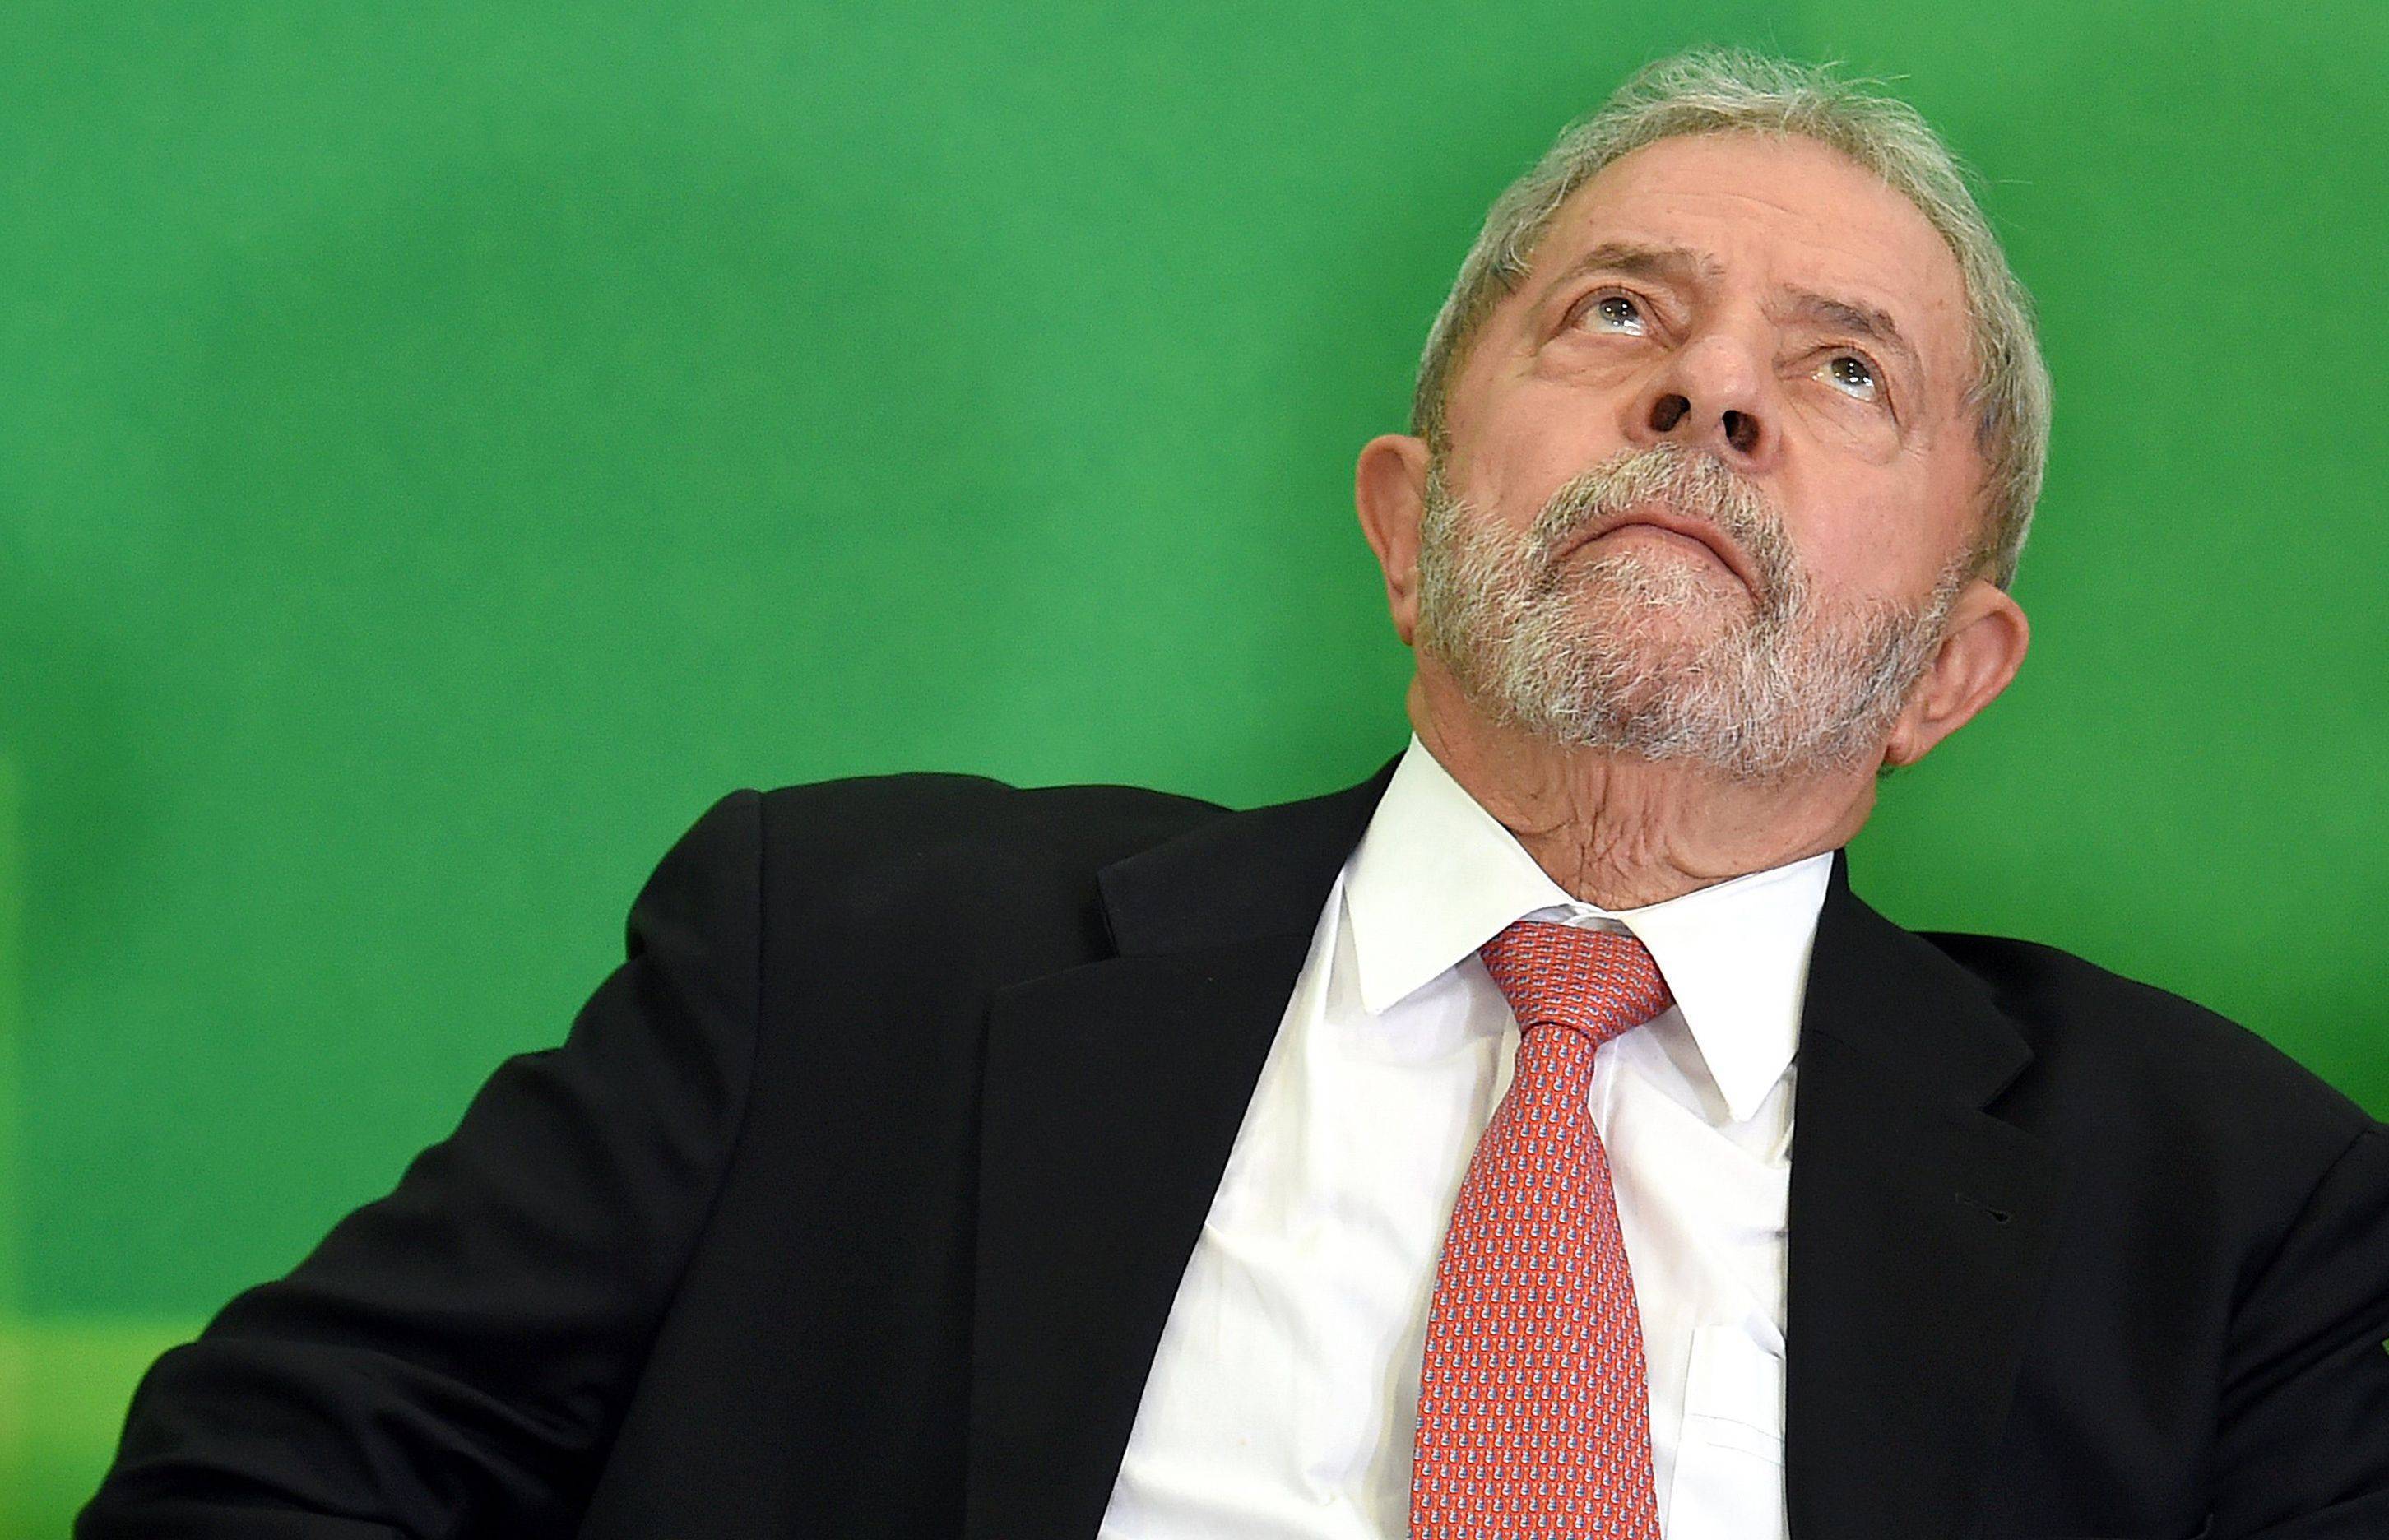 La condena de Lula, ¿es una farsa o no?